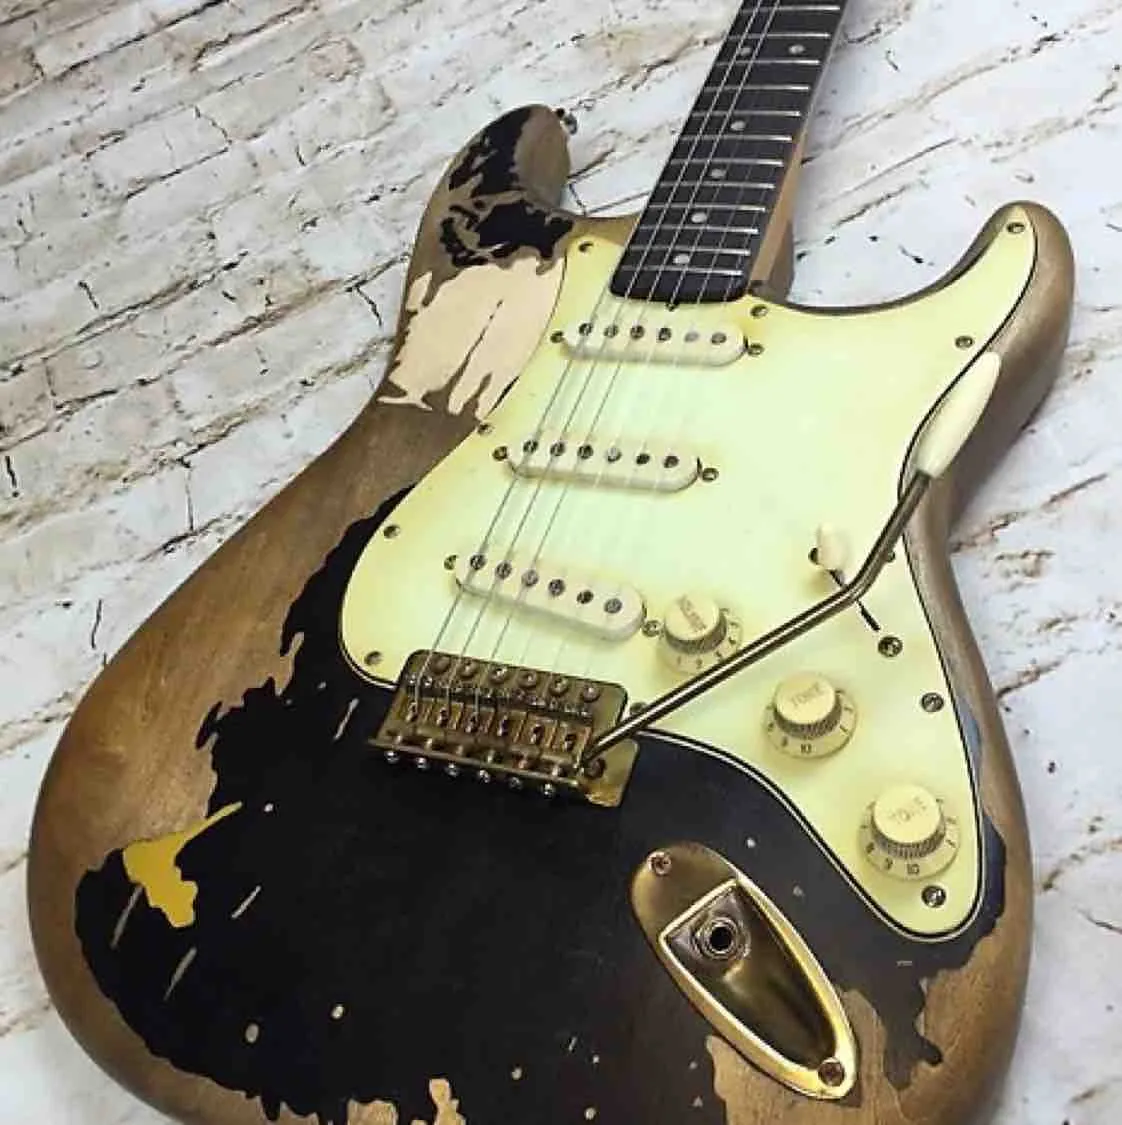 En stock Travail manuel John Mayer Relic Black 1 Guitare électrique Masterbuilt Matériel en or vieilli Peinture Nitrolacquer Tremolo Bridge Whammy Bar Accordeurs vintage